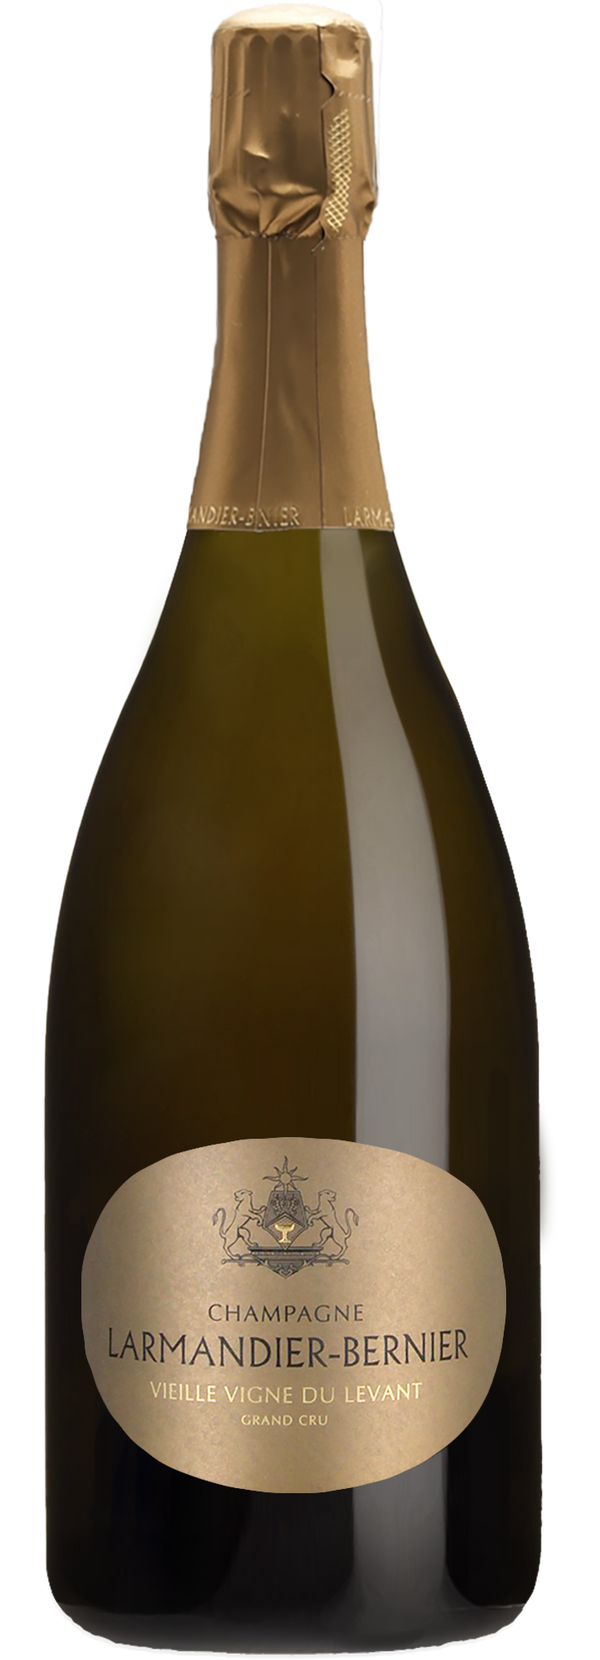 Champagne Larmandier-Bernier Grand Cru Vieille Vigne du Levant 2012 (Disg. Sep 2021) (1500ml)